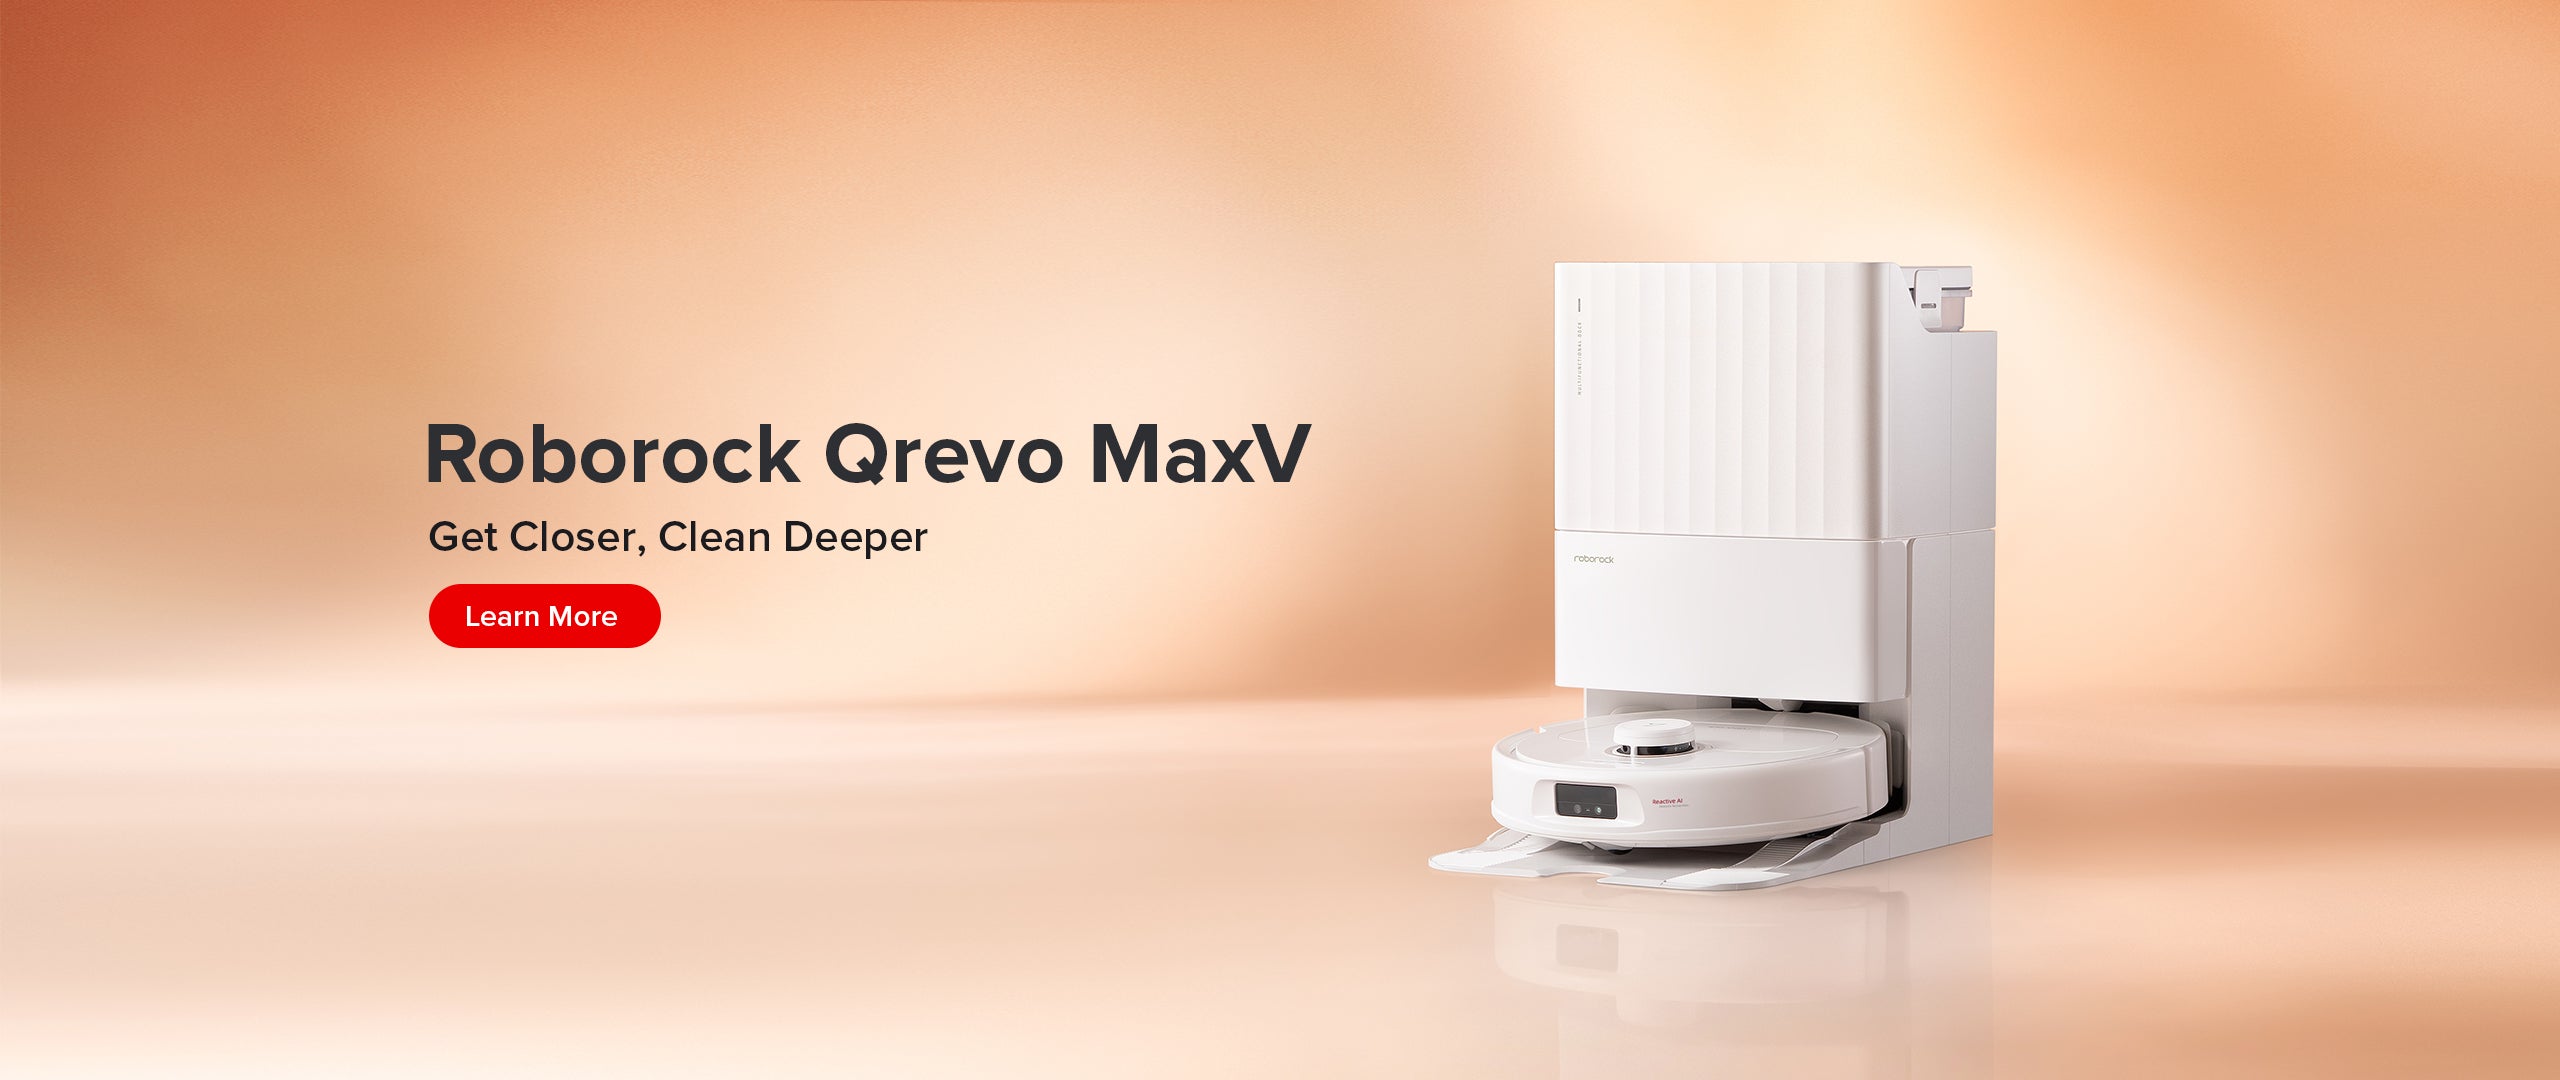 Roborock Qrevo MaxV - Get Closer, Clean Deeper.